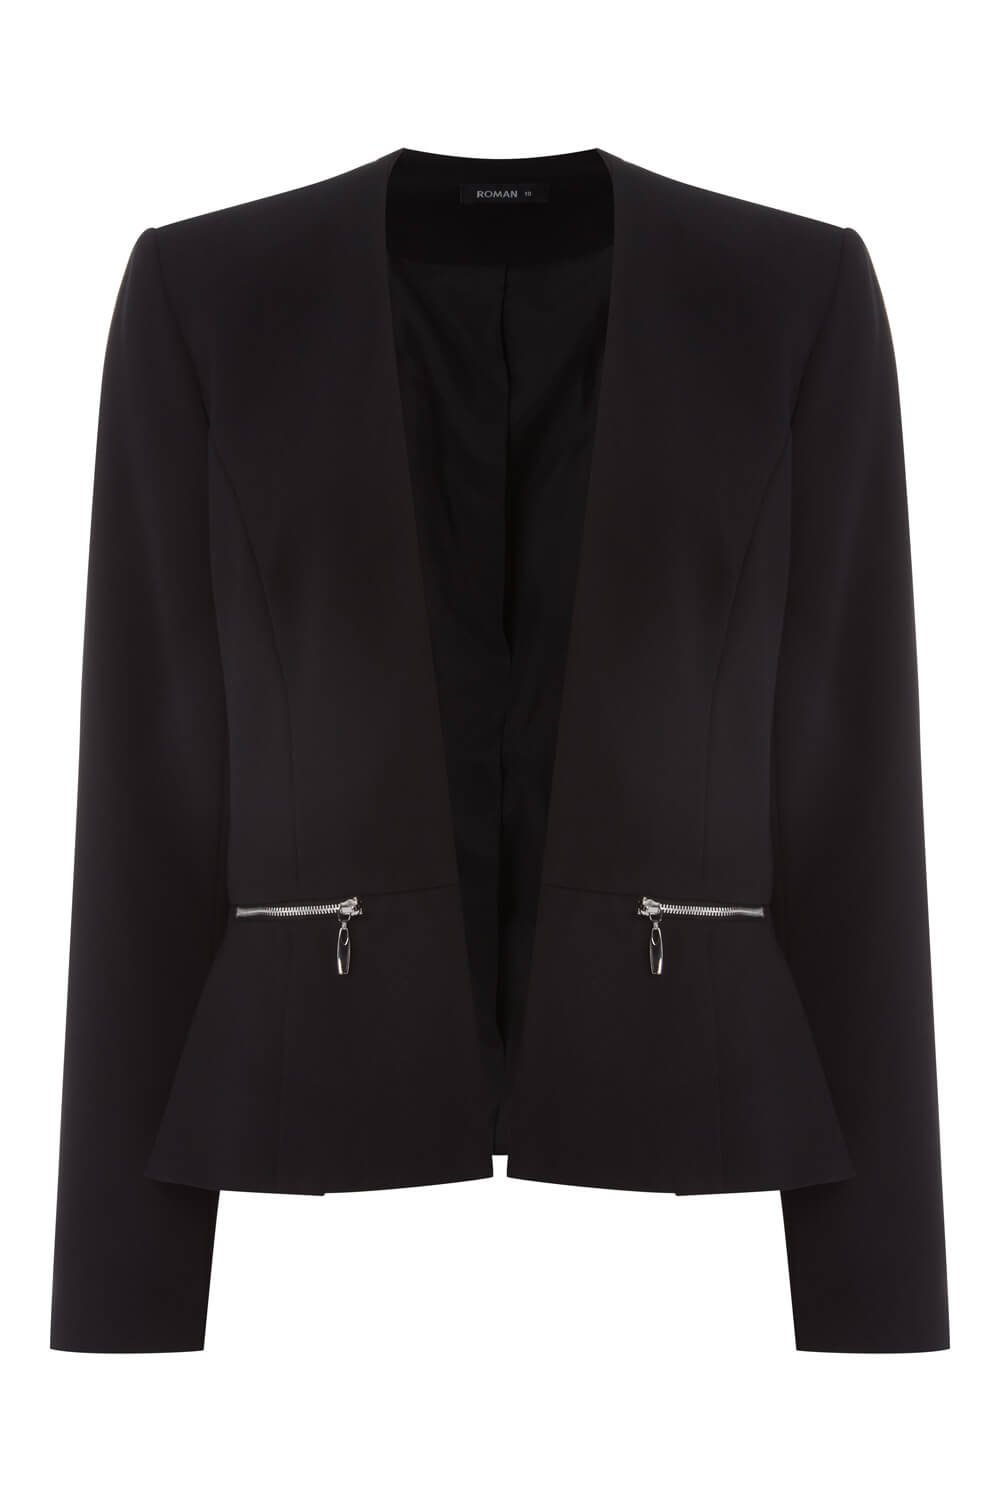 Black Long Sleeve Zip Detail Jacket, Image 4 of 4